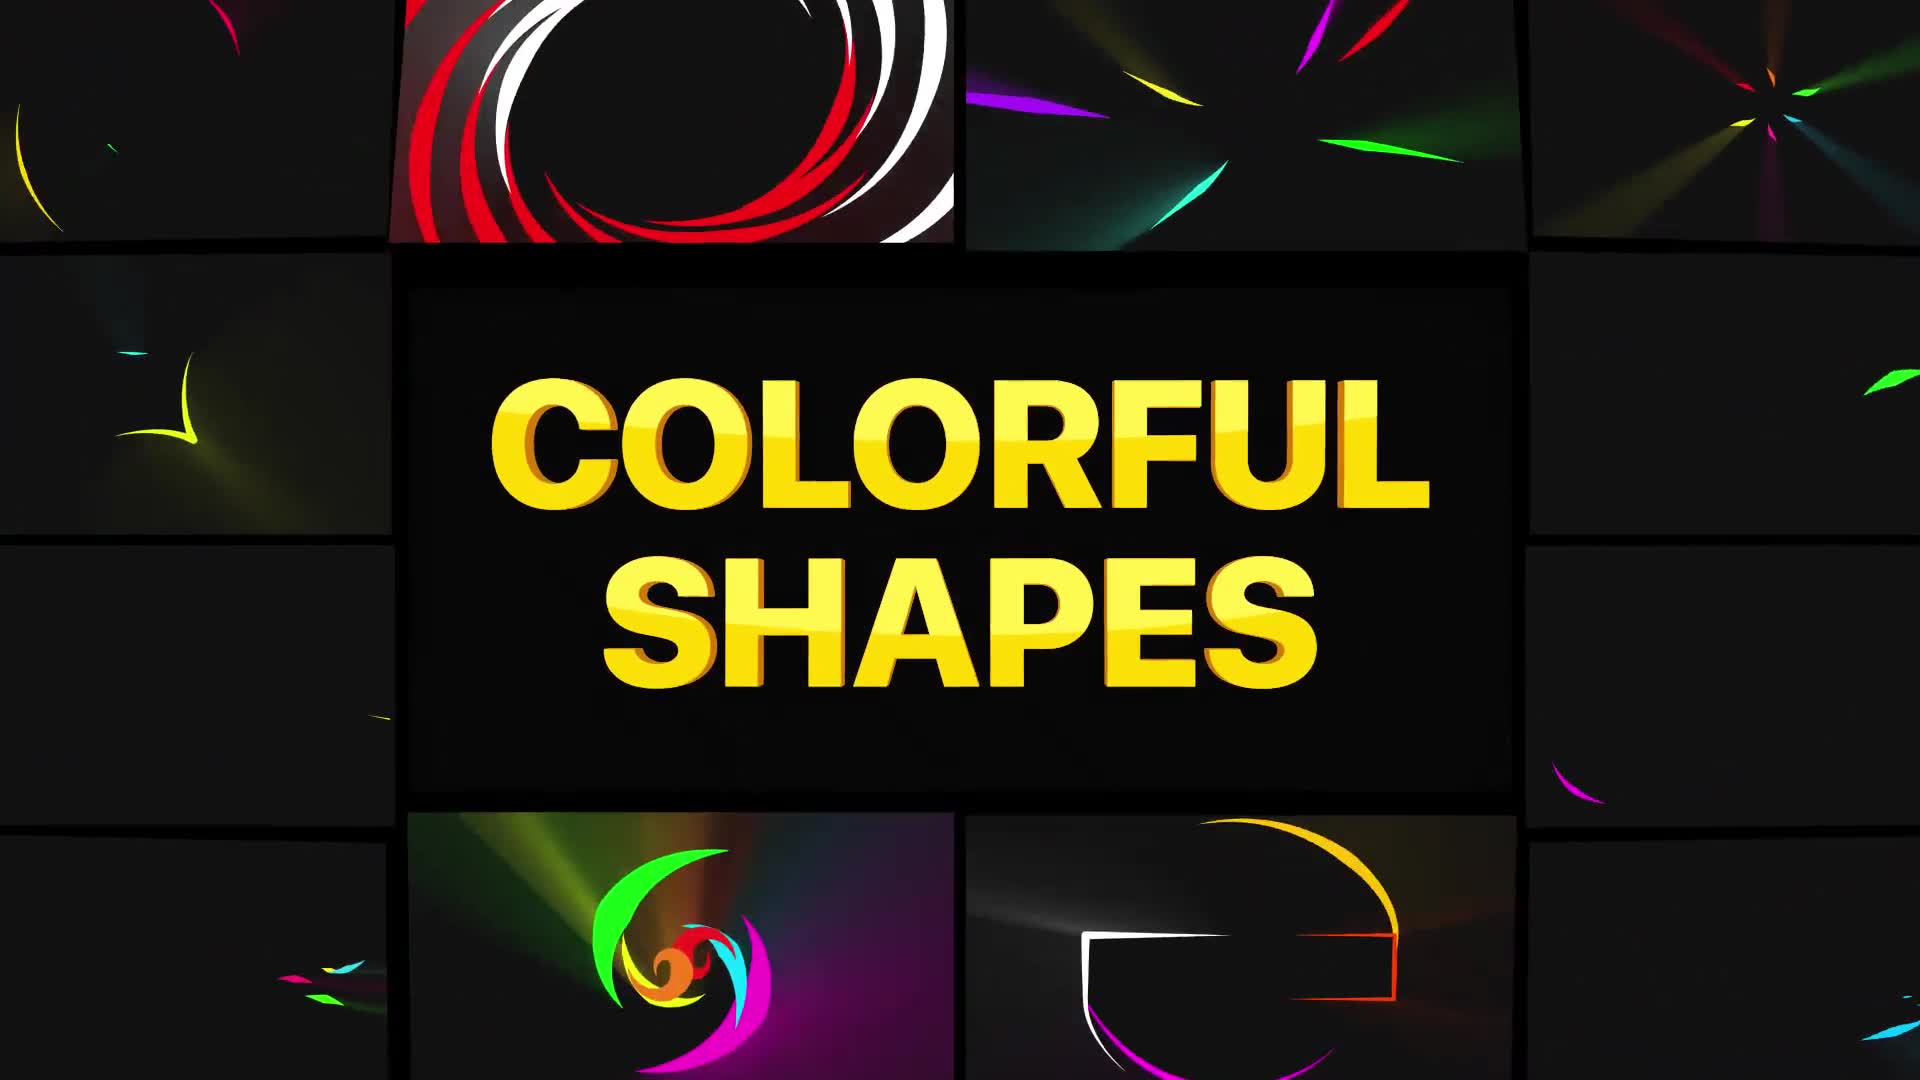 Colorful Shapes | Premiere Pro MOGRT Videohive 26590027 Premiere Pro Image 2